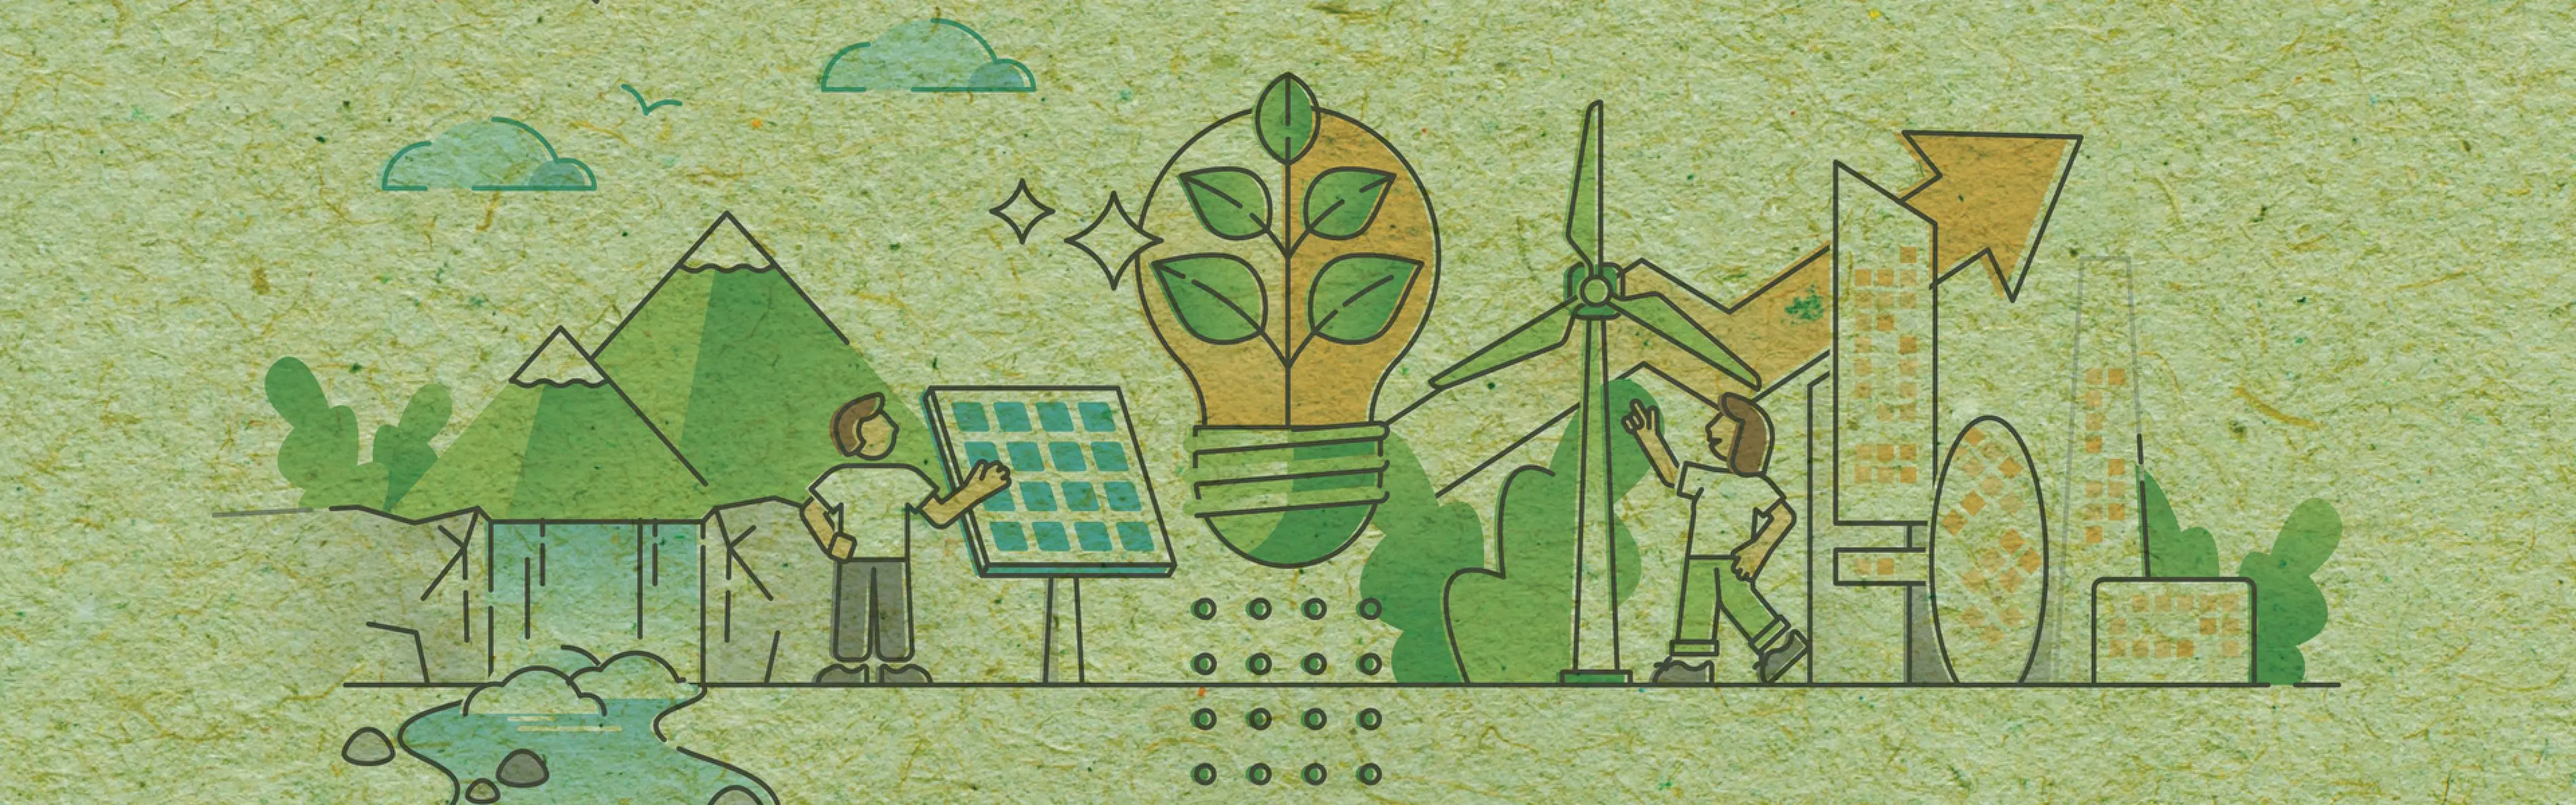 Bilde som illustrerer bærekraft - strategi og lederskap